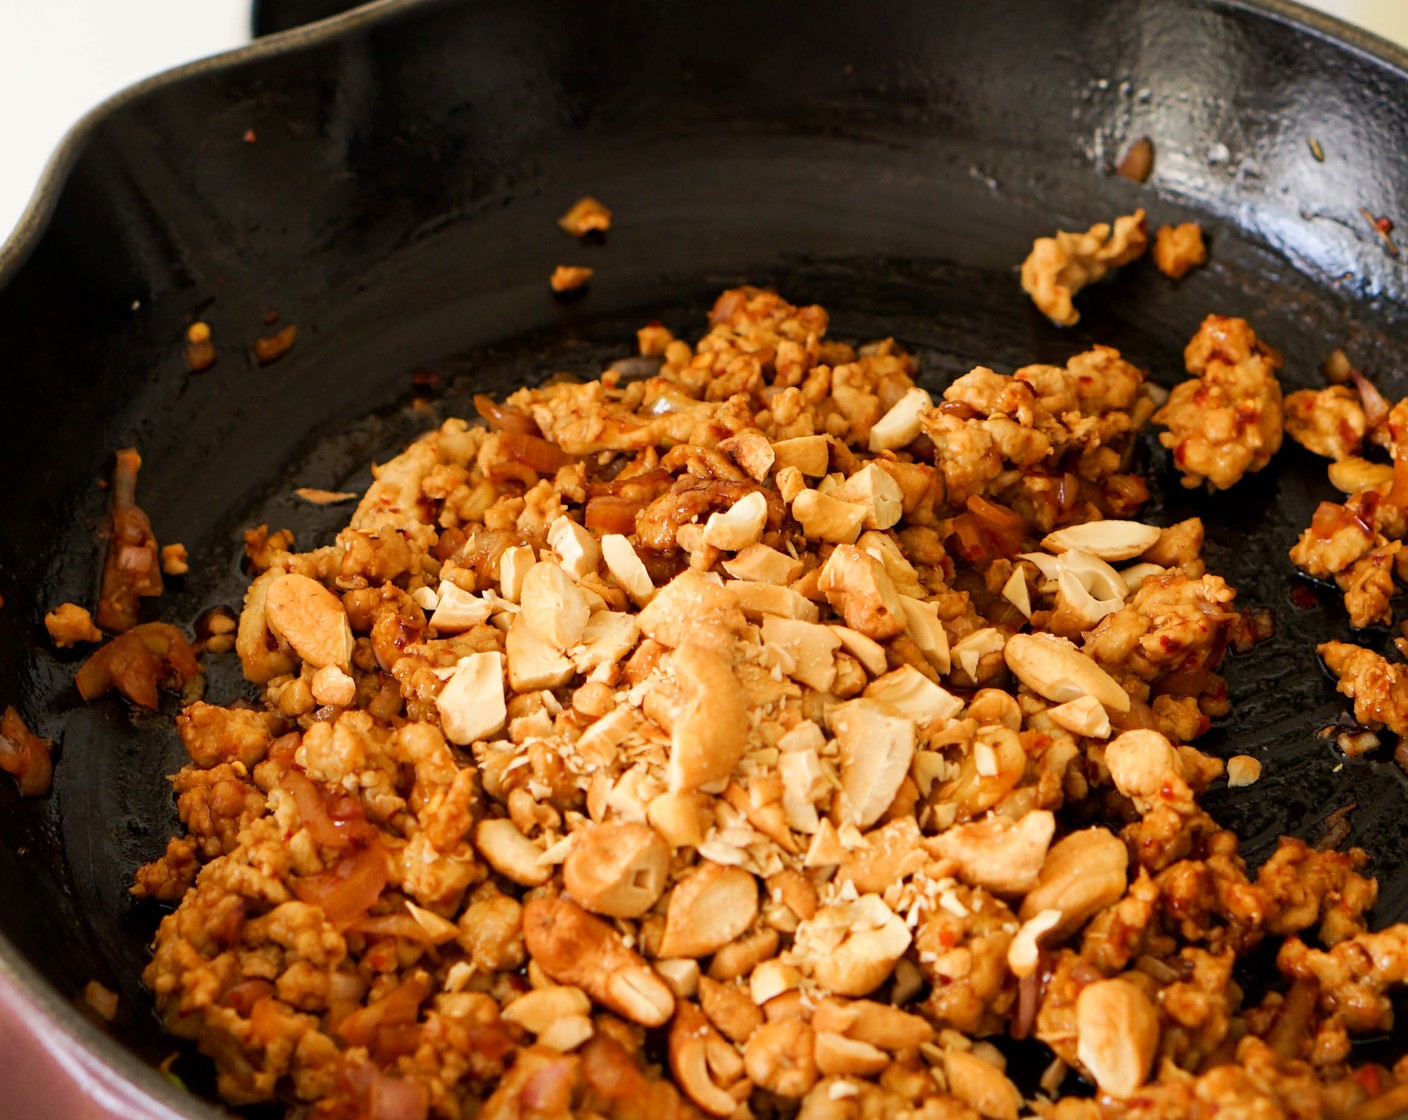 Schritt 1 Olivenöl (2 Esslöffel) in einer Pfanne auf mittlerer bis hoher Stufe erhitzen. Das Hackfleisch (225 g) in die Pfanne geben und mit Chiliflocken (1 TL), Kosher Salz (nach Bedarf), Zucker (1 TL) und Fischsauce (1 EL) würzen. Das Hühnerfleisch mit einem Spatel in kleine Krümel zerteilen und durchschwenken, um es gleichmässig mit den Gewürzen zu bedecken. 5 Minuten weiter garen, bis das Huhn weitgehend durchgegart ist.